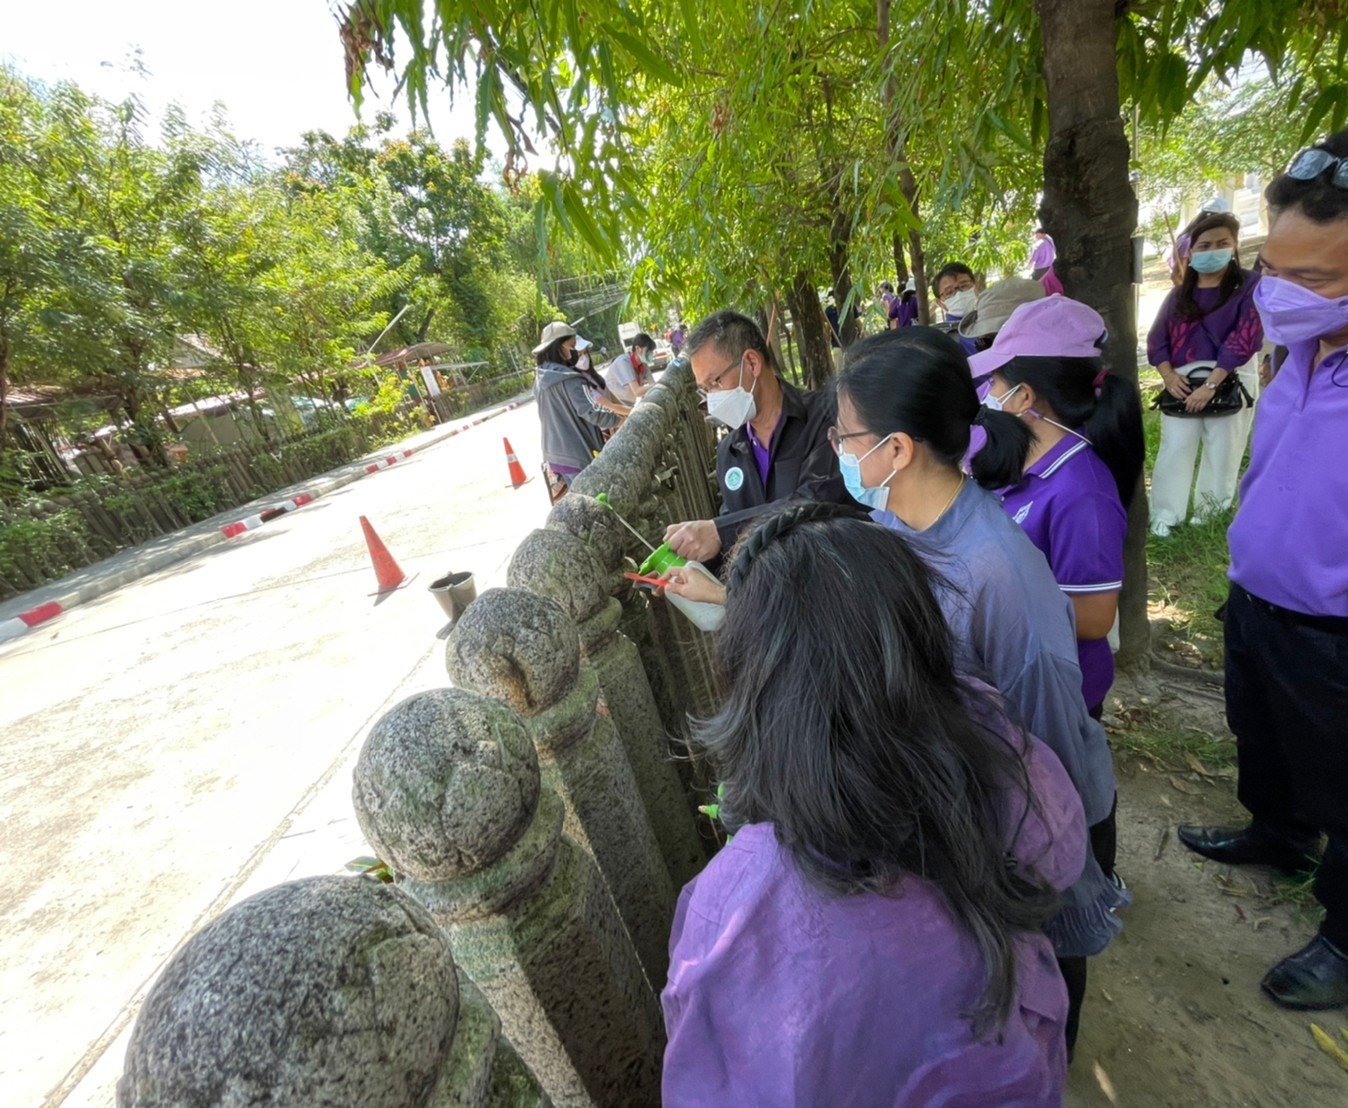 โครงการวันอนุรักษ์มรดกไทย กิจกรรมรณรงค์ดูแลรักษามรดกศิลปวัฒนธรรมของชาติ ประจำปี 2565